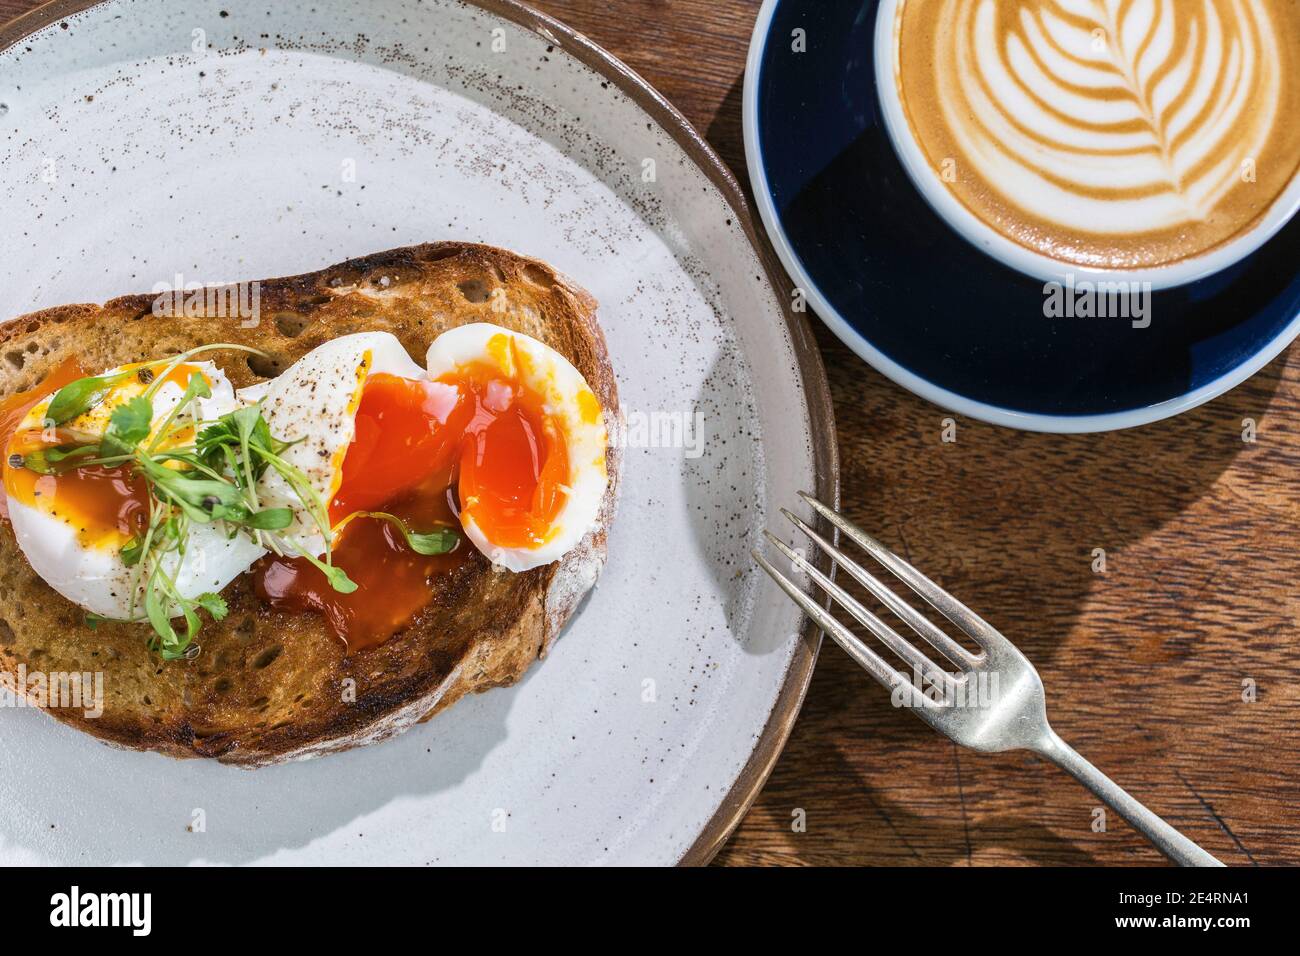 Una tazza di caffè con latte art sulla parte superiore, pane tostato di impasto con uova in camicia sul tavolo in caffea. Foto Stock